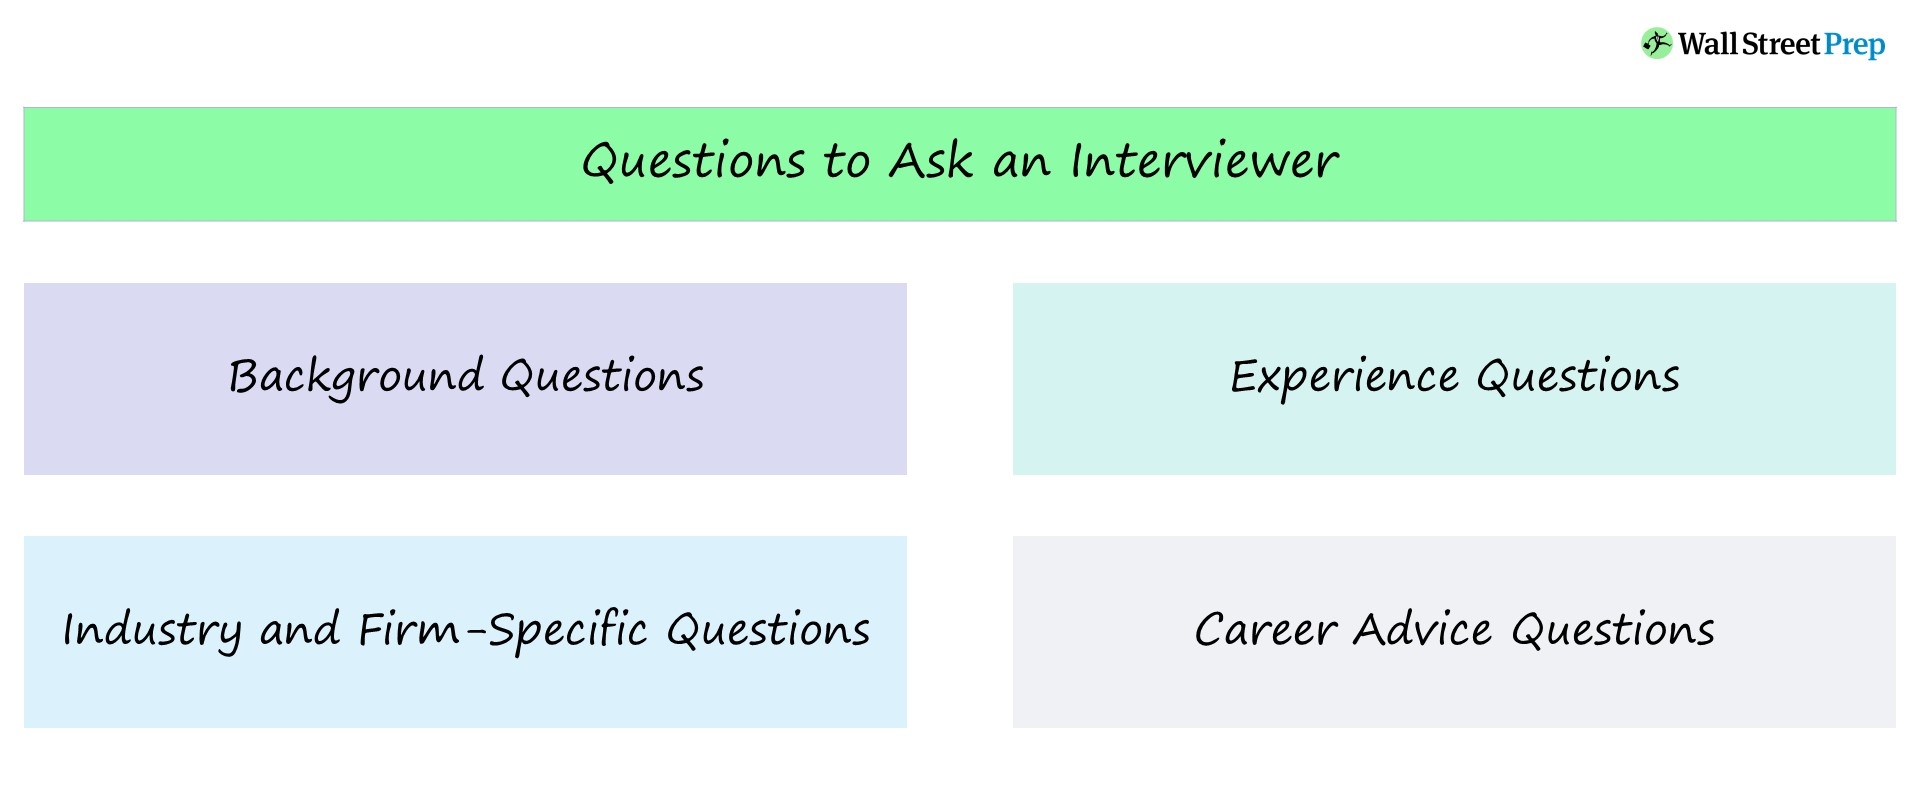 Preguntas para el entrevistador | Ejemplos de banca de inversión